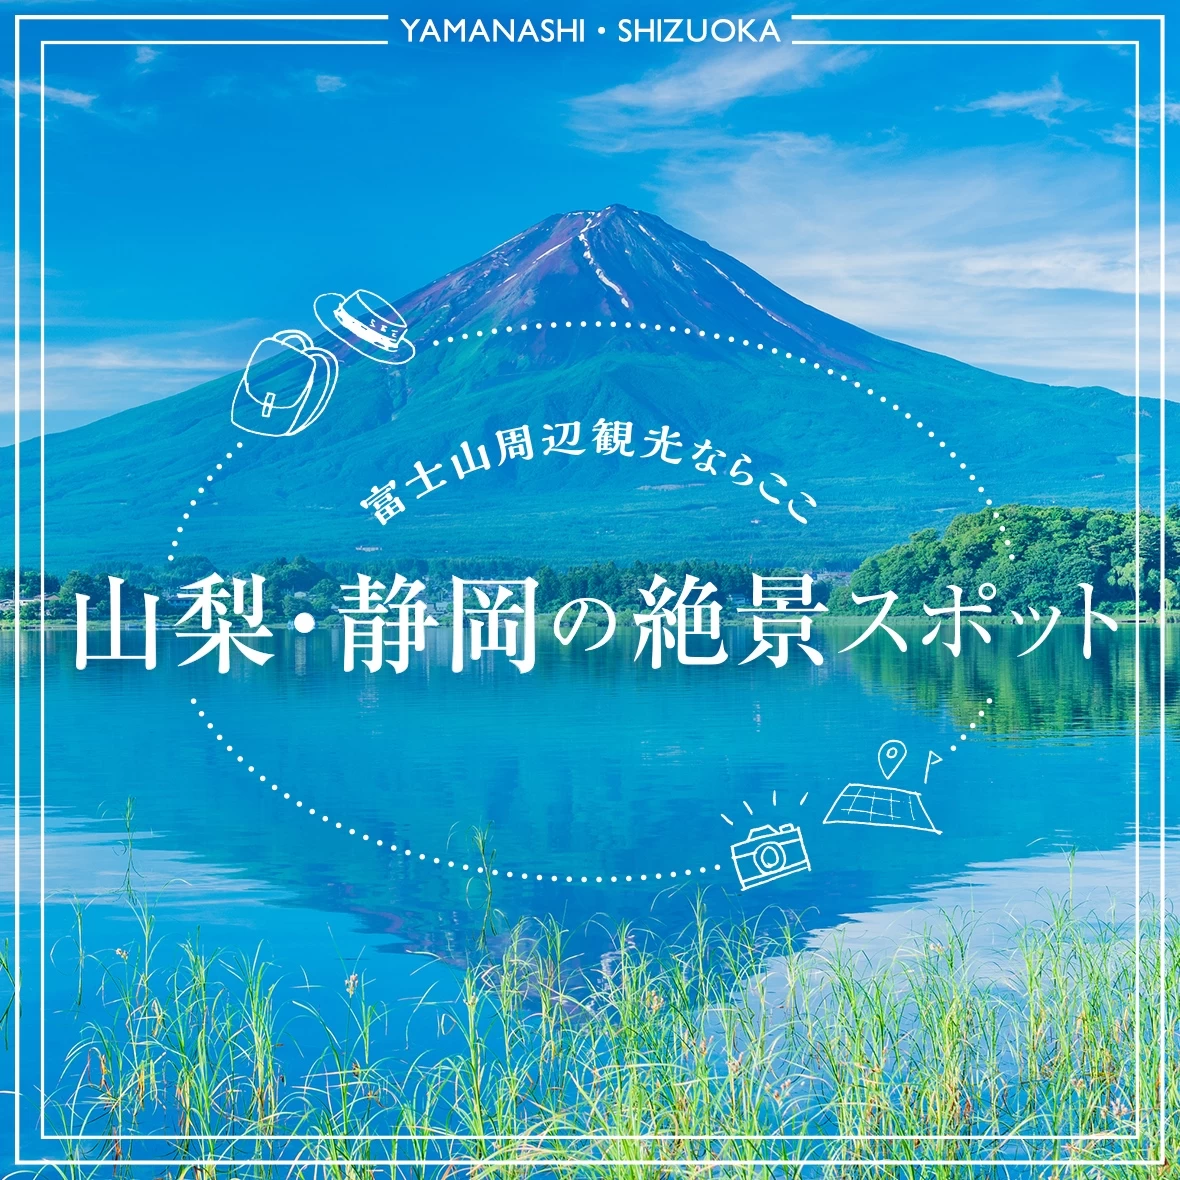 【富士山周辺観光ならここ】山梨・静岡で絶景も見られるおすすめスポット32選